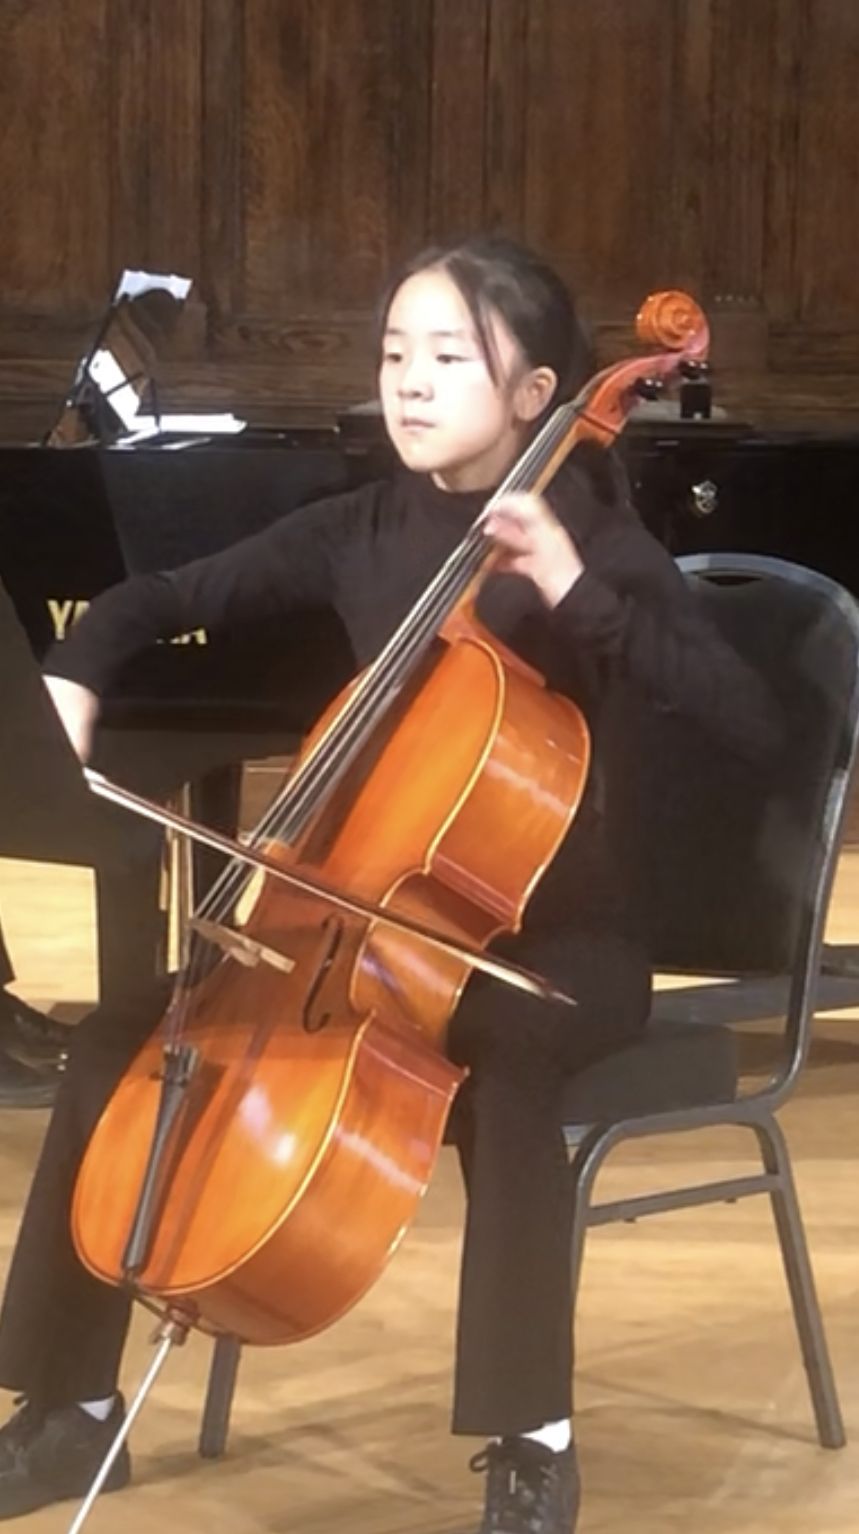 Joanne Jiang performing